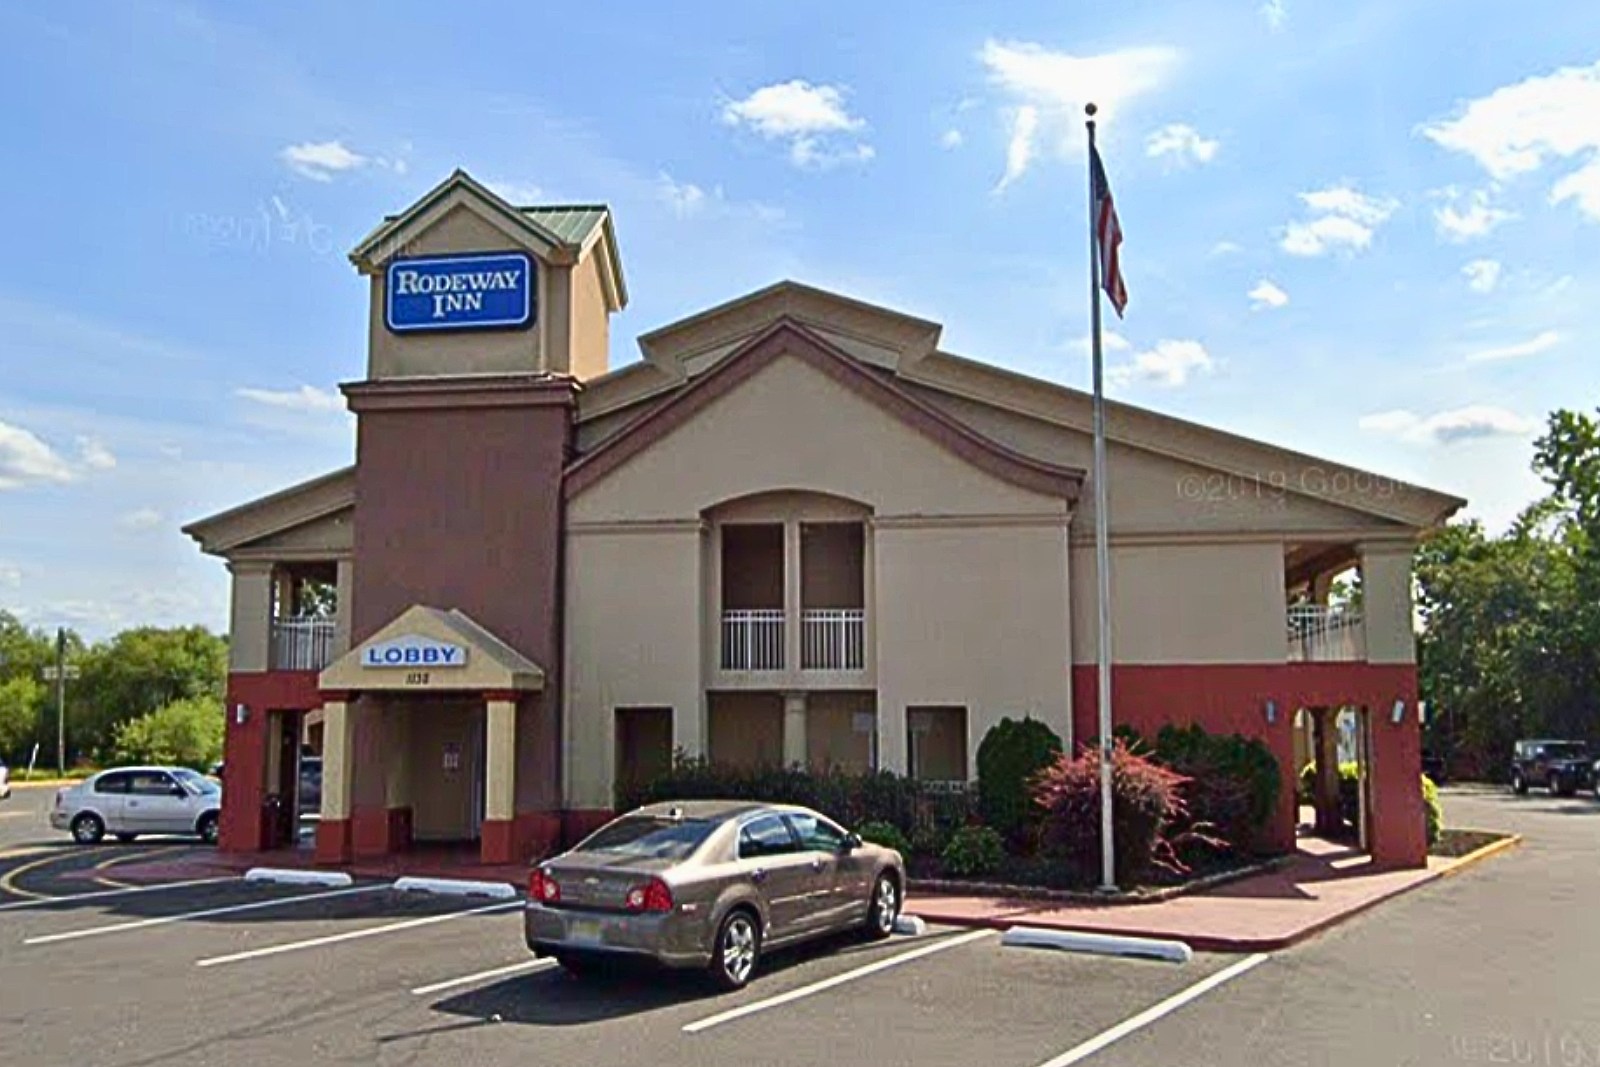 Motel Georgia 2016 Porn - Arrest made after dead man found at Mount Laurel, NJ hotel